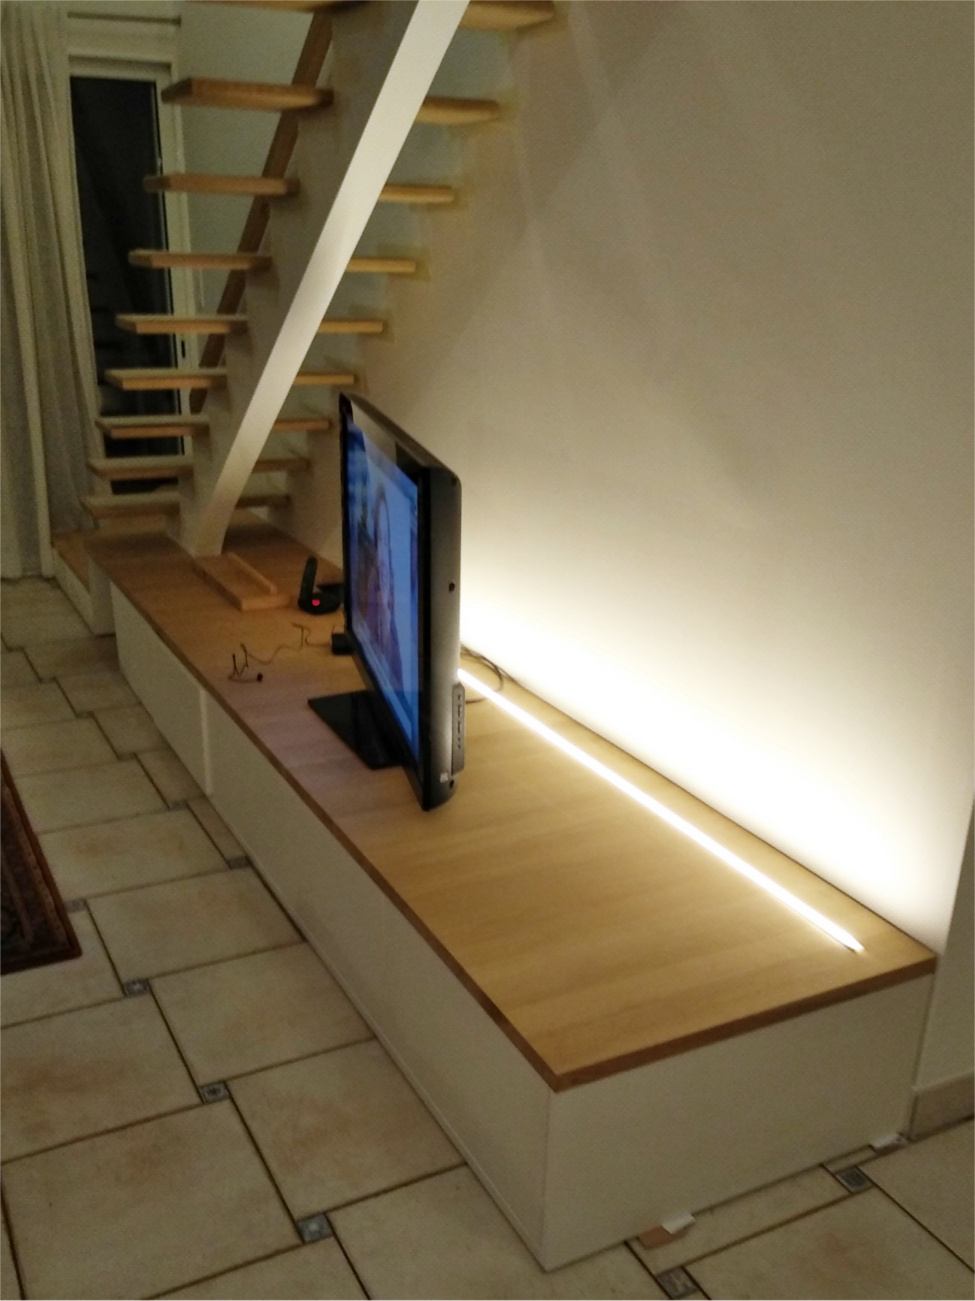 Aménagement sous escalier meuble télé chêne massif, mélaminé et médium laqué blanc